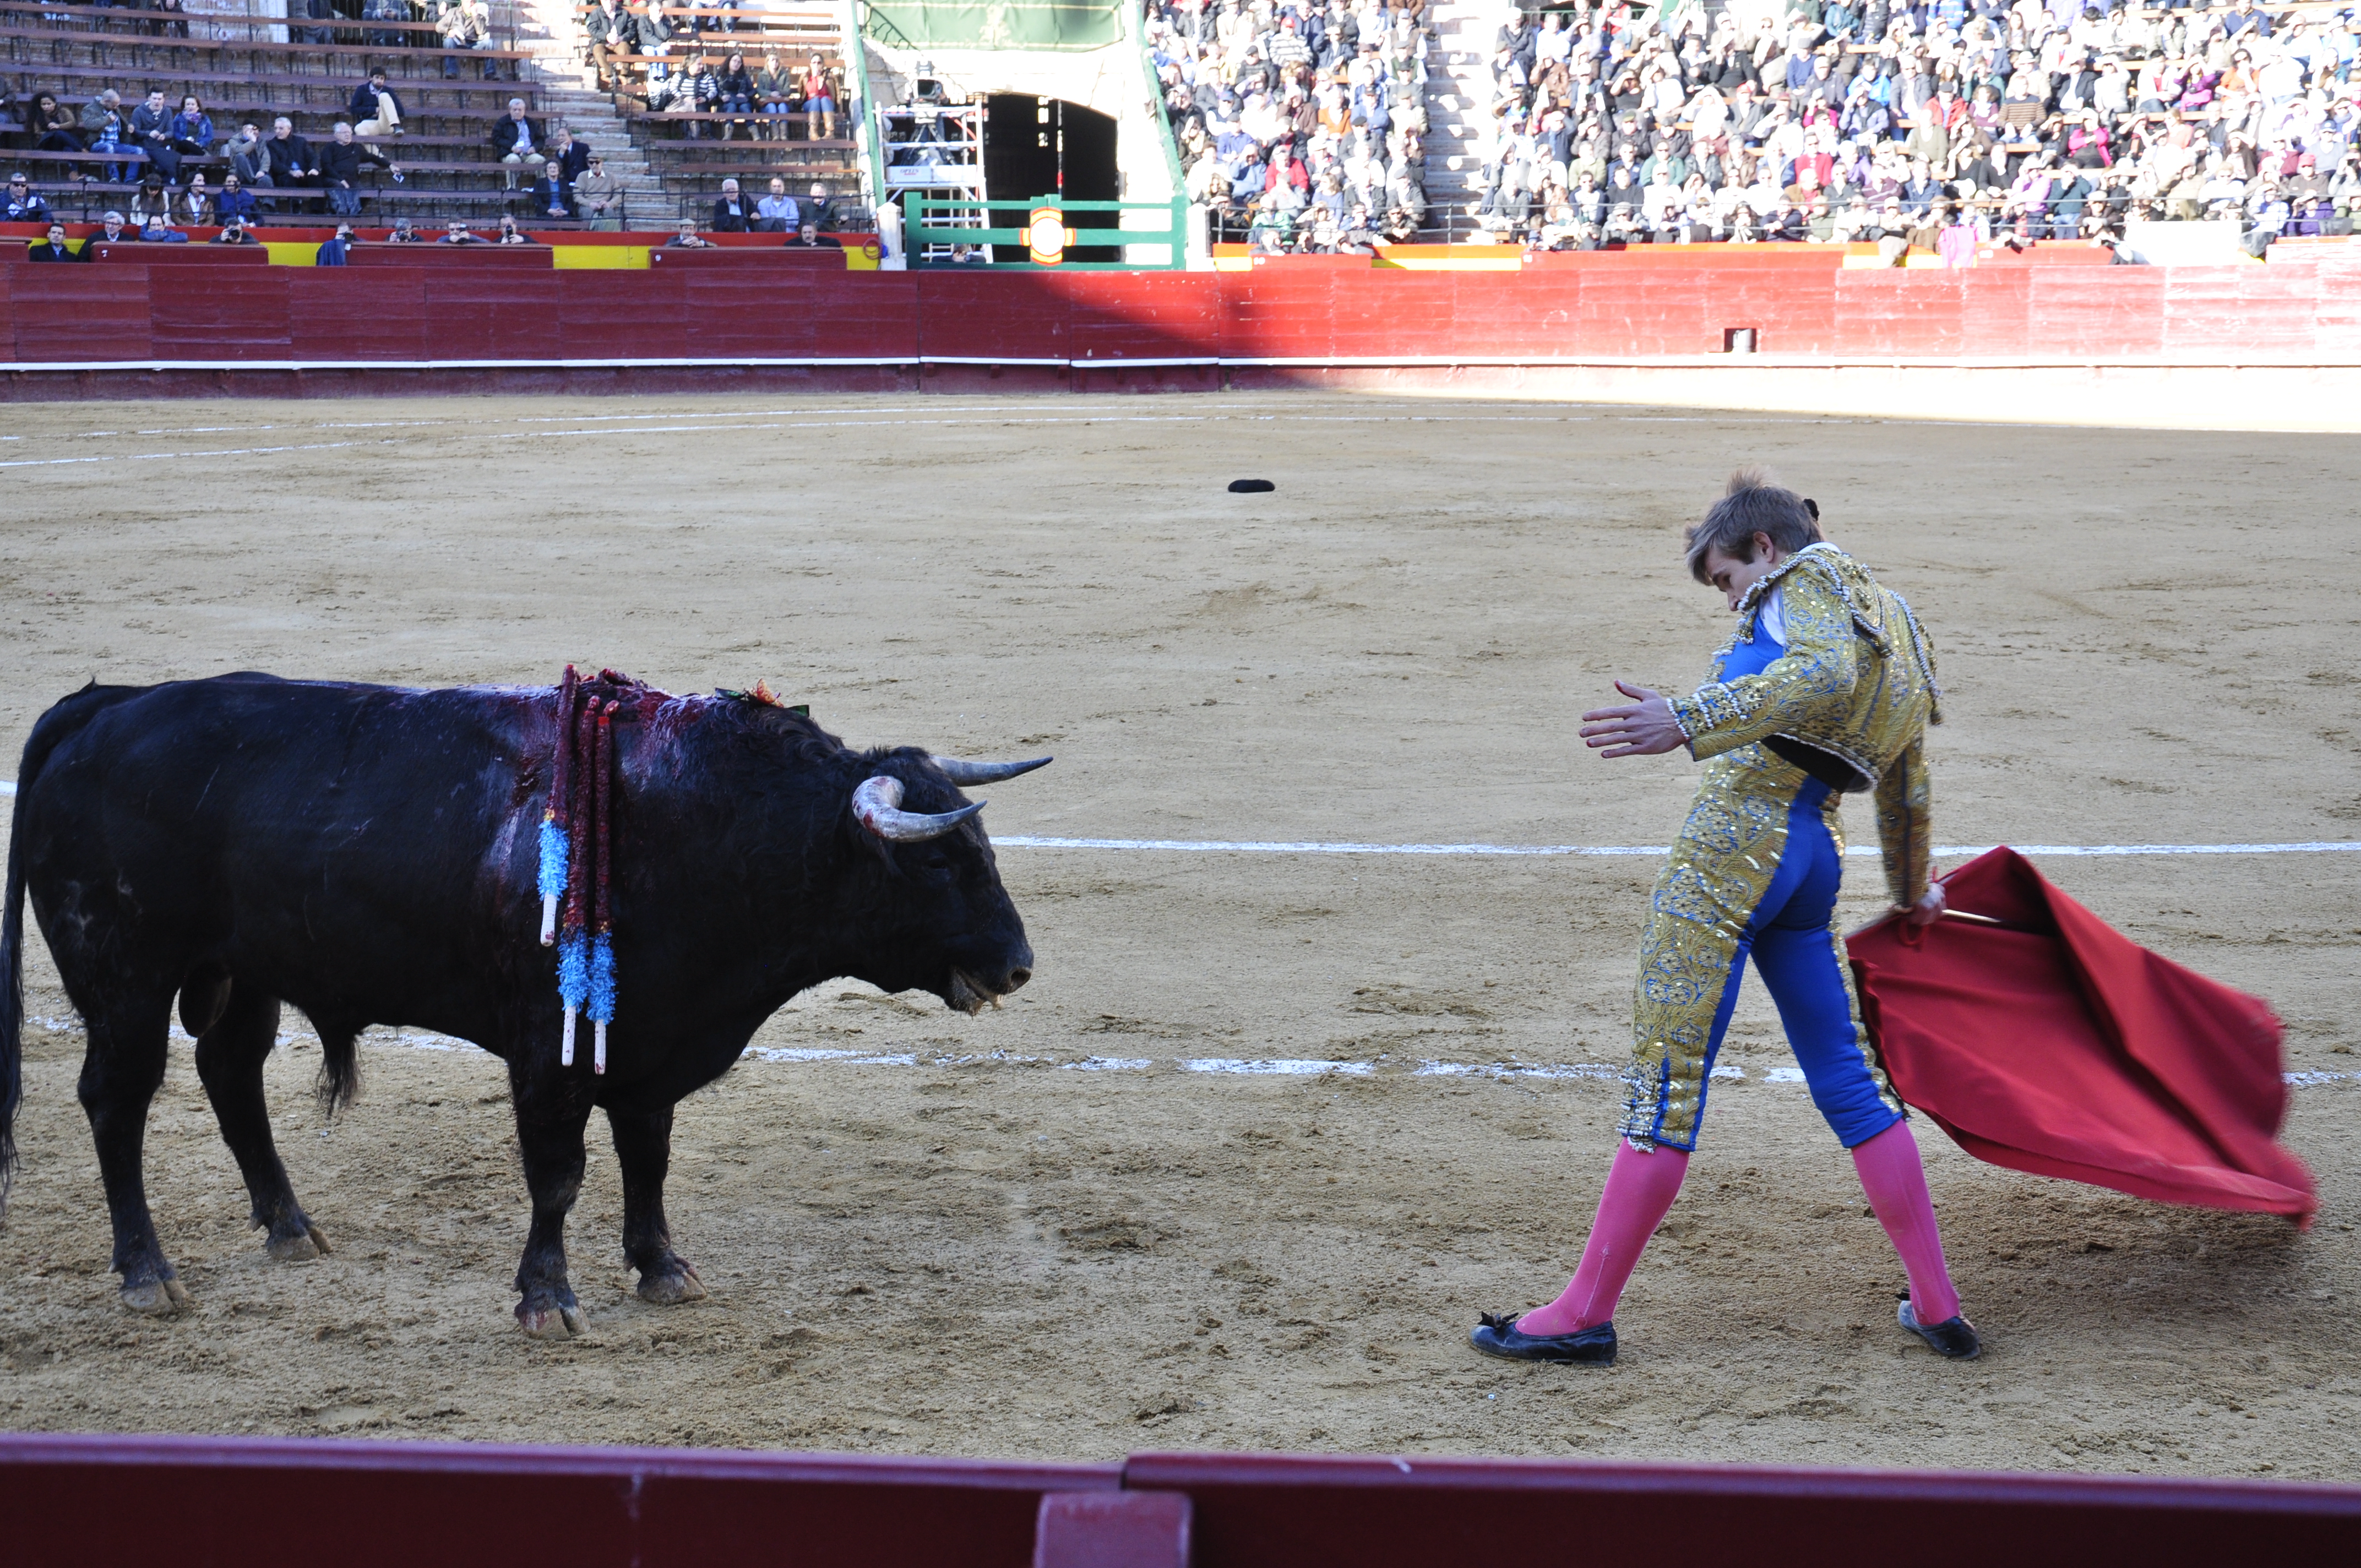 Walka byków w Hiszpanii na Plaza de torros